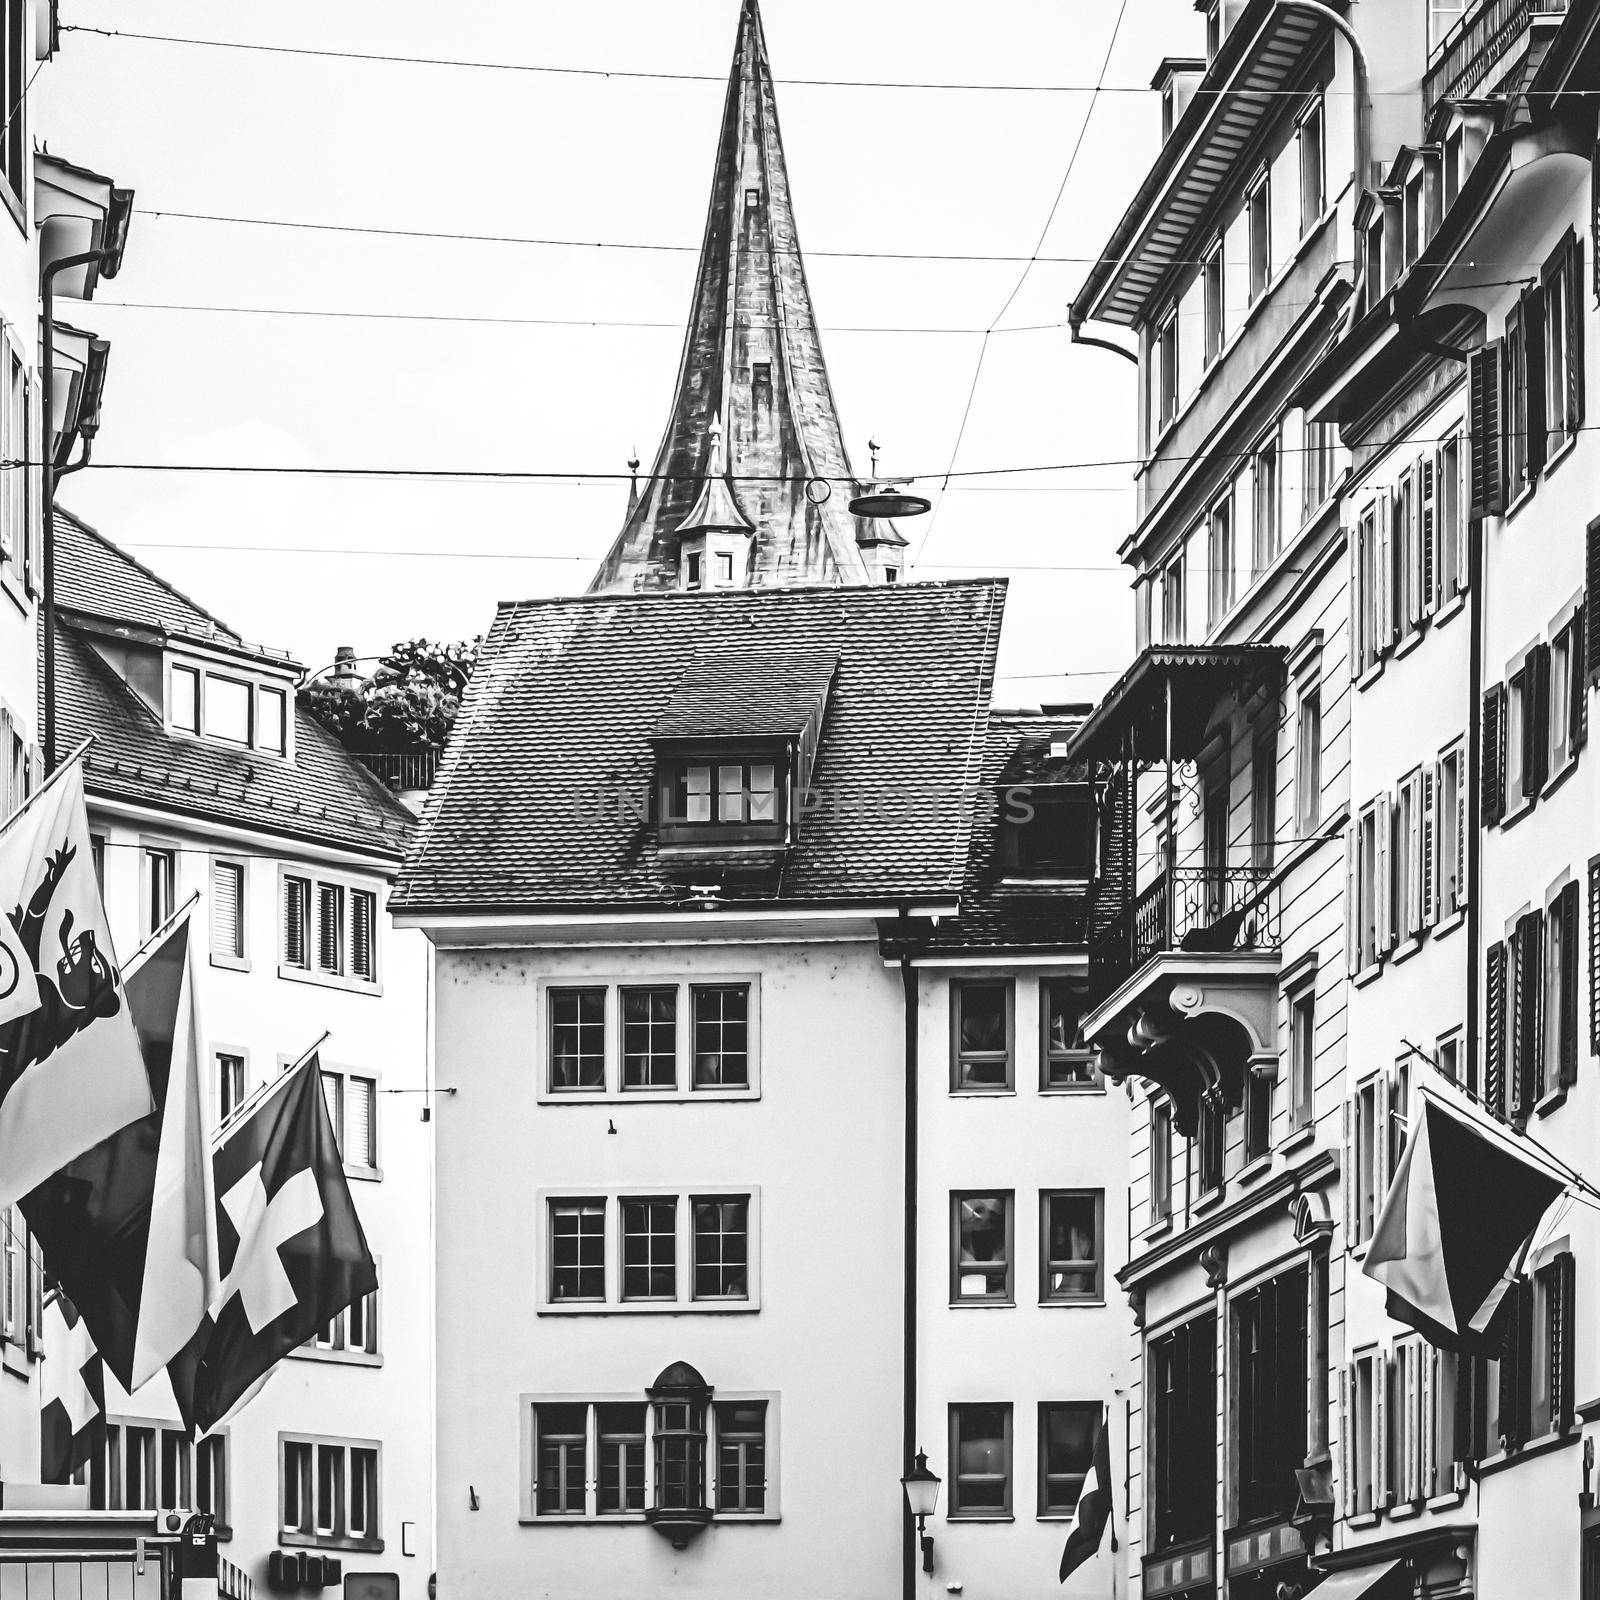 Zurich, Switzerland view of historic Old Town buildings near main railway train station Zurich HB, Hauptbahnhof, Swiss architecture and travel destination by Anneleven